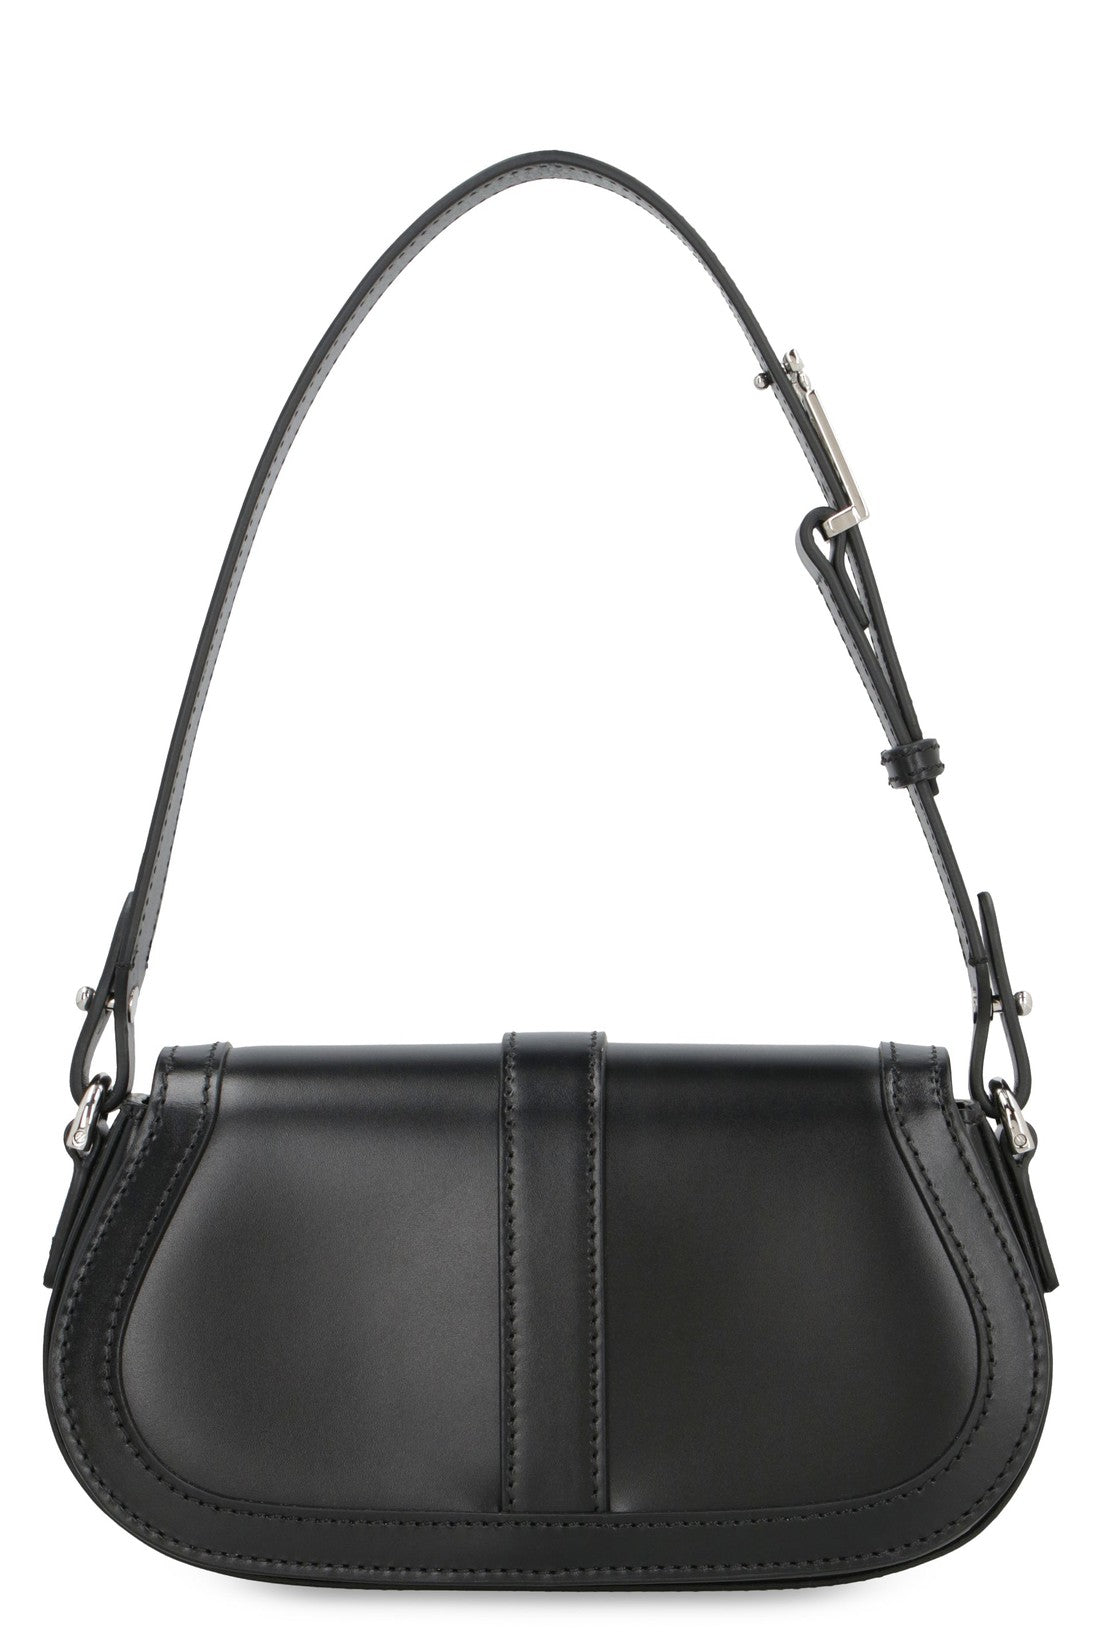 Versace-OUTLET-SALE-Greca Goddess mini leather shoulder bag-ARCHIVIST